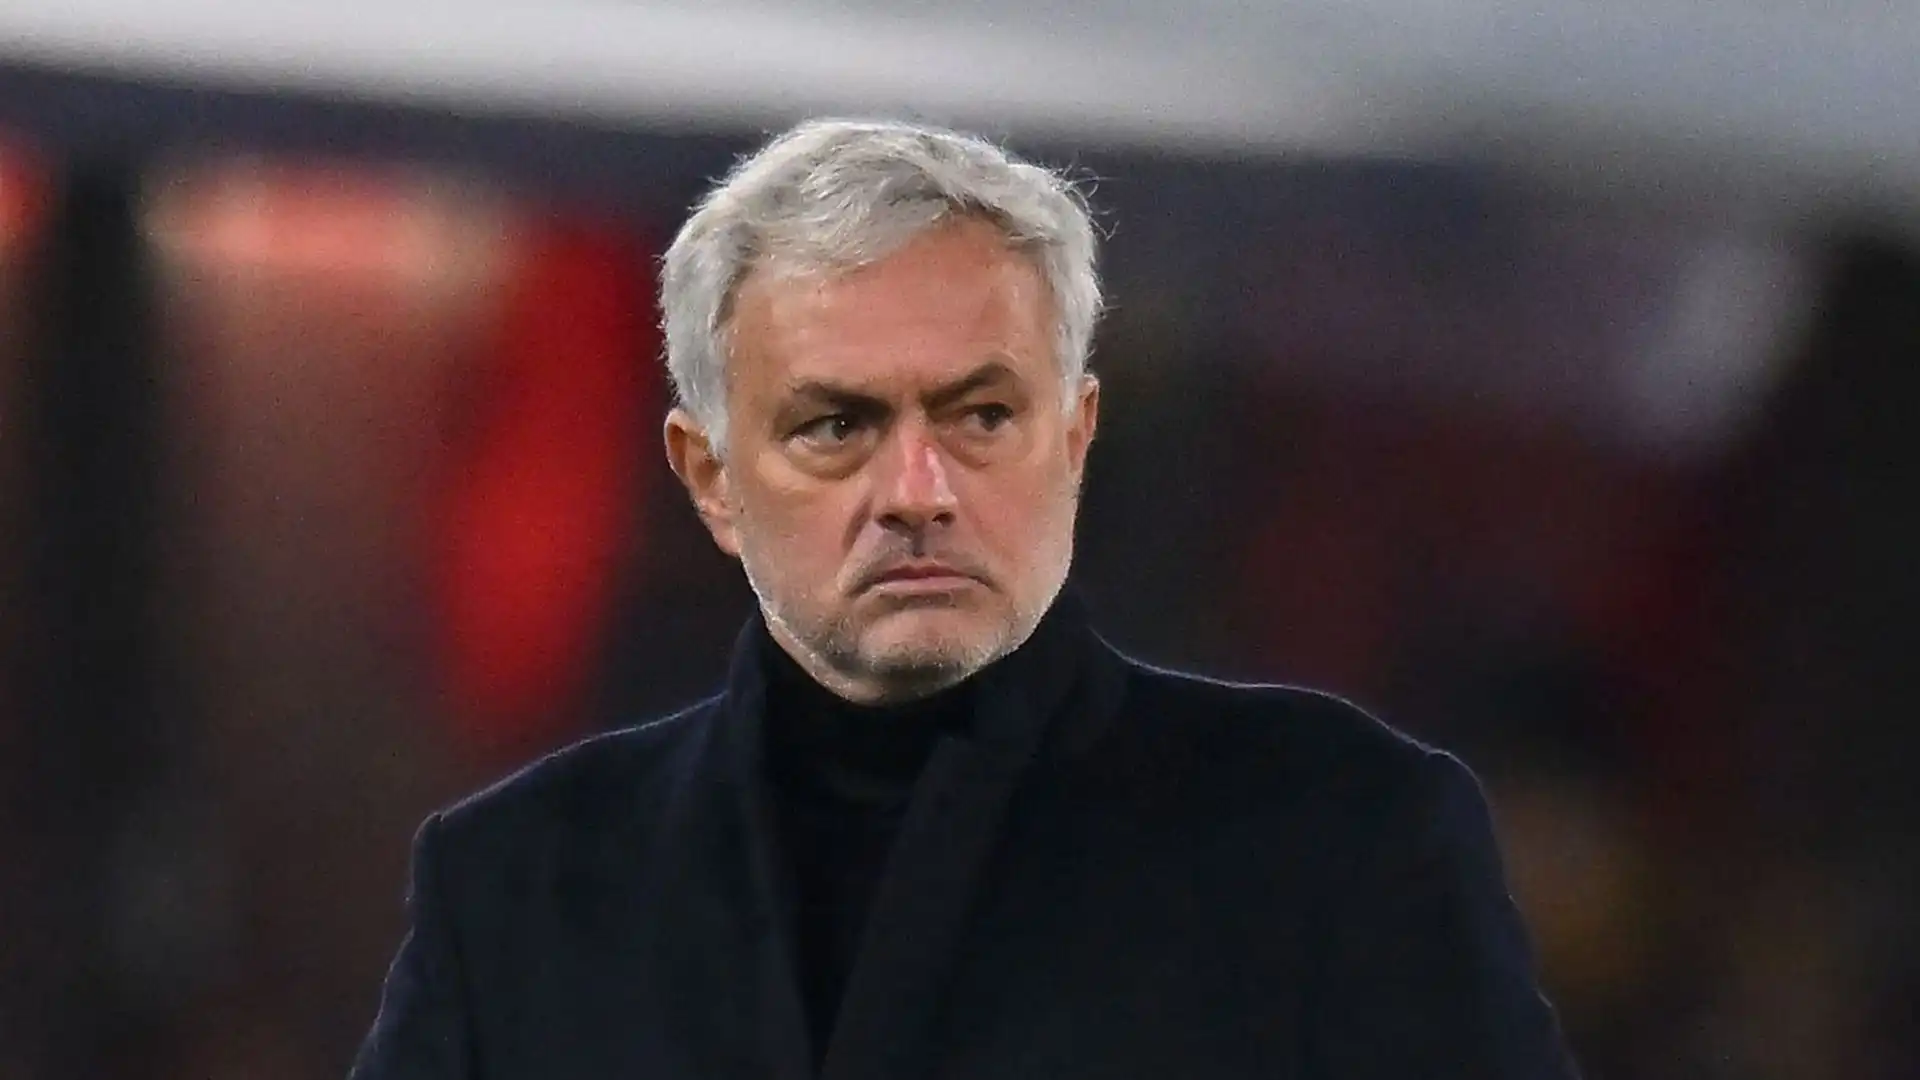 Al suo posto potrebbe arrivare José Mourinho, senza squadra dopo l'addio alla Roma